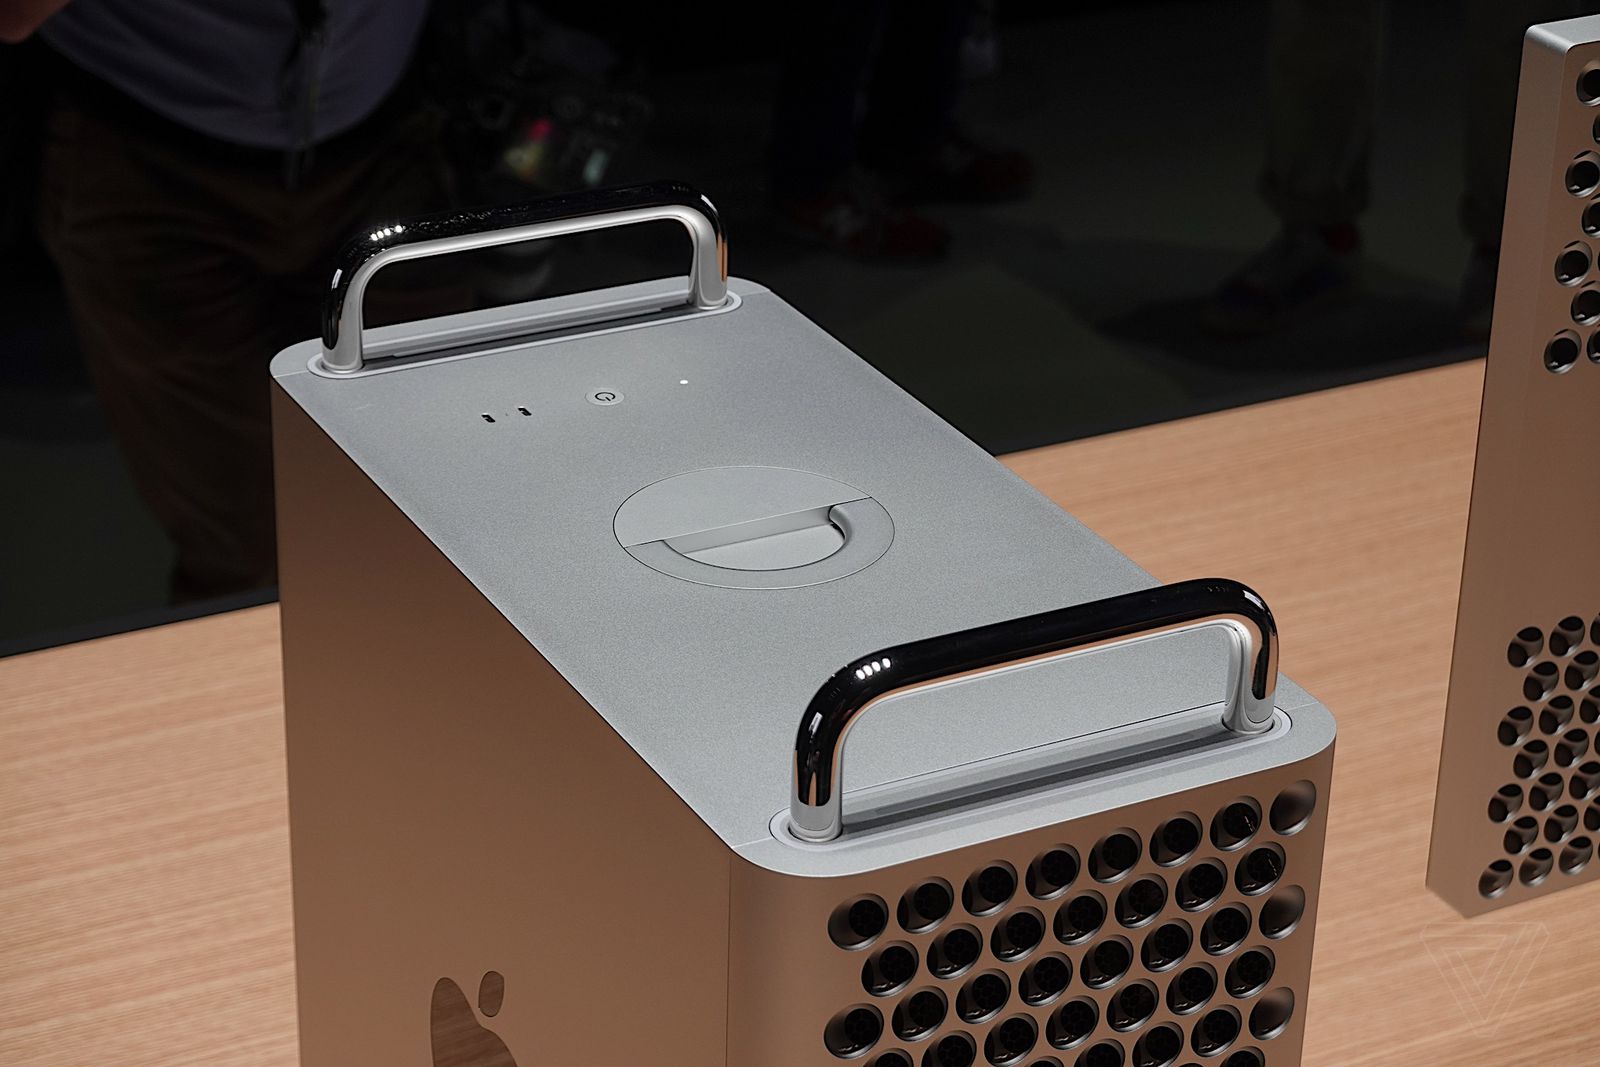 apple macbook pro 2019